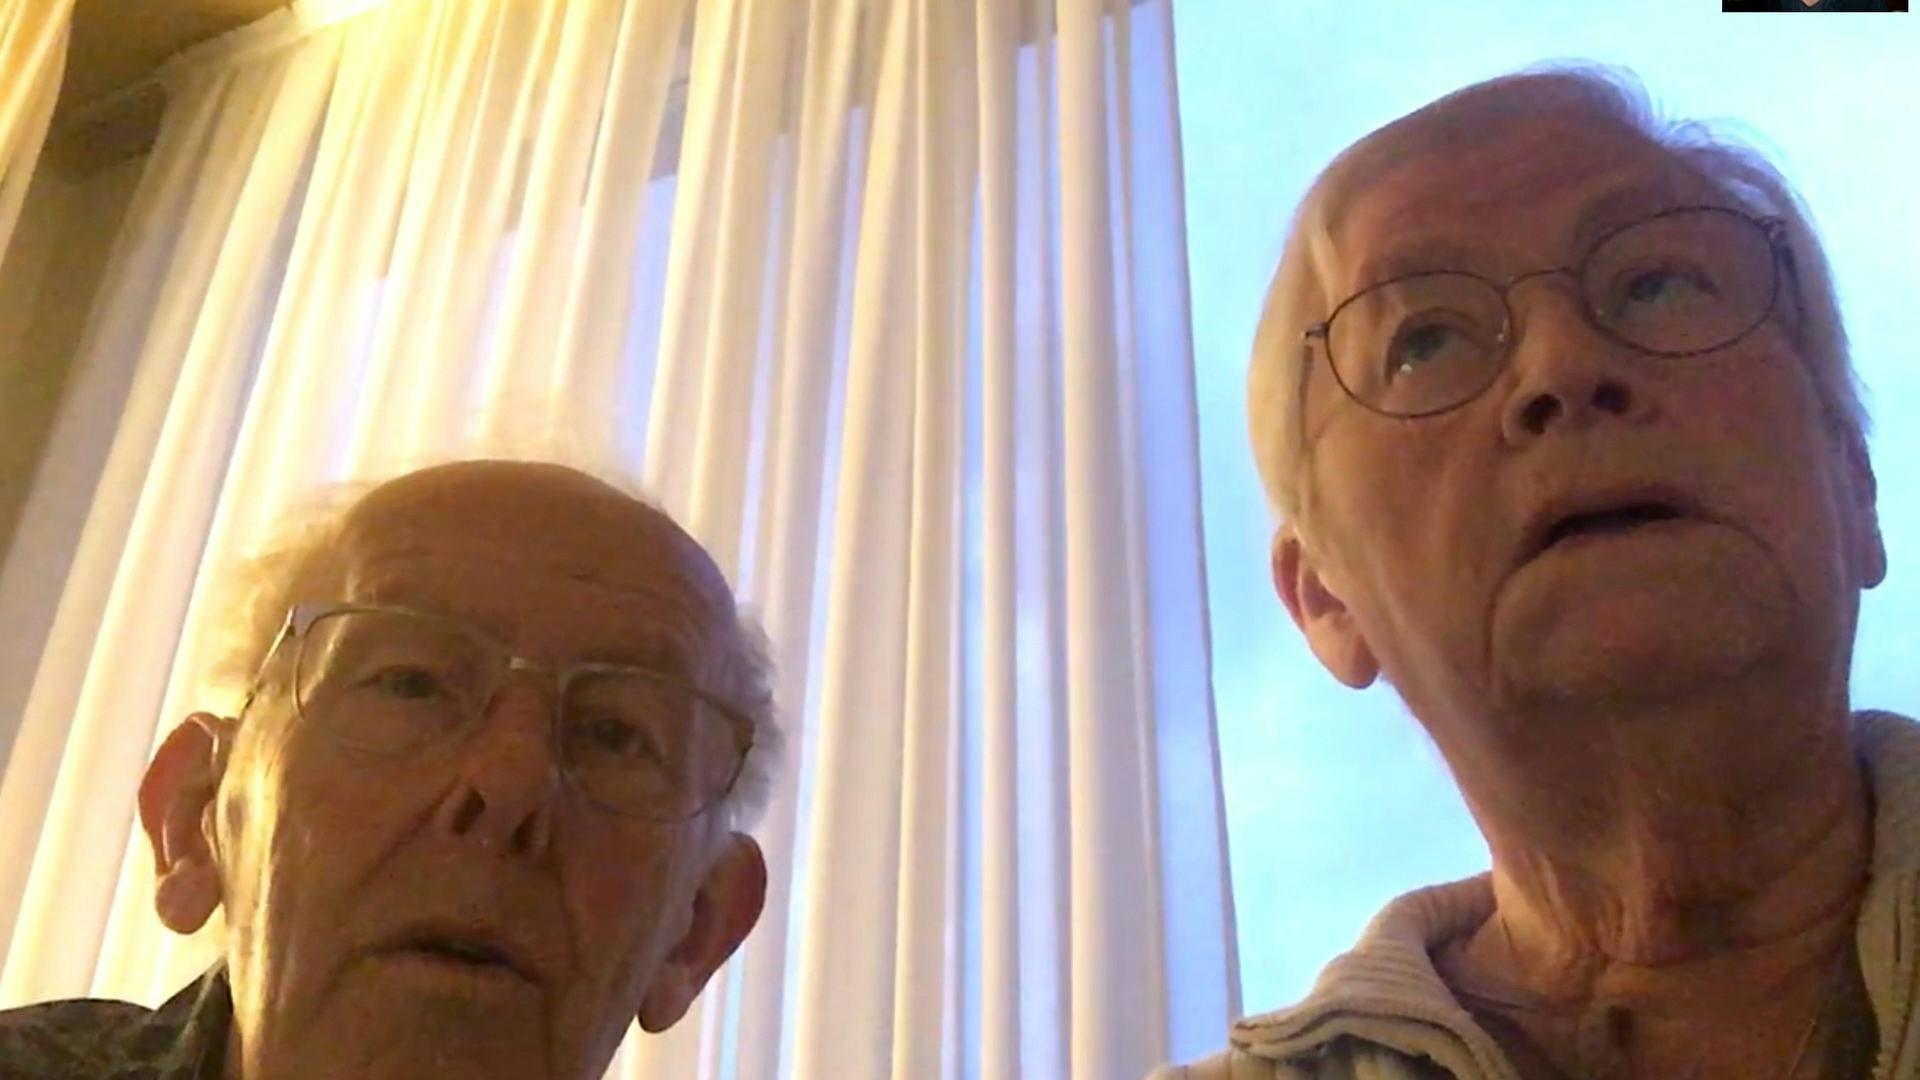 Ouders Olaf van Gerwen Still uit videocolumn